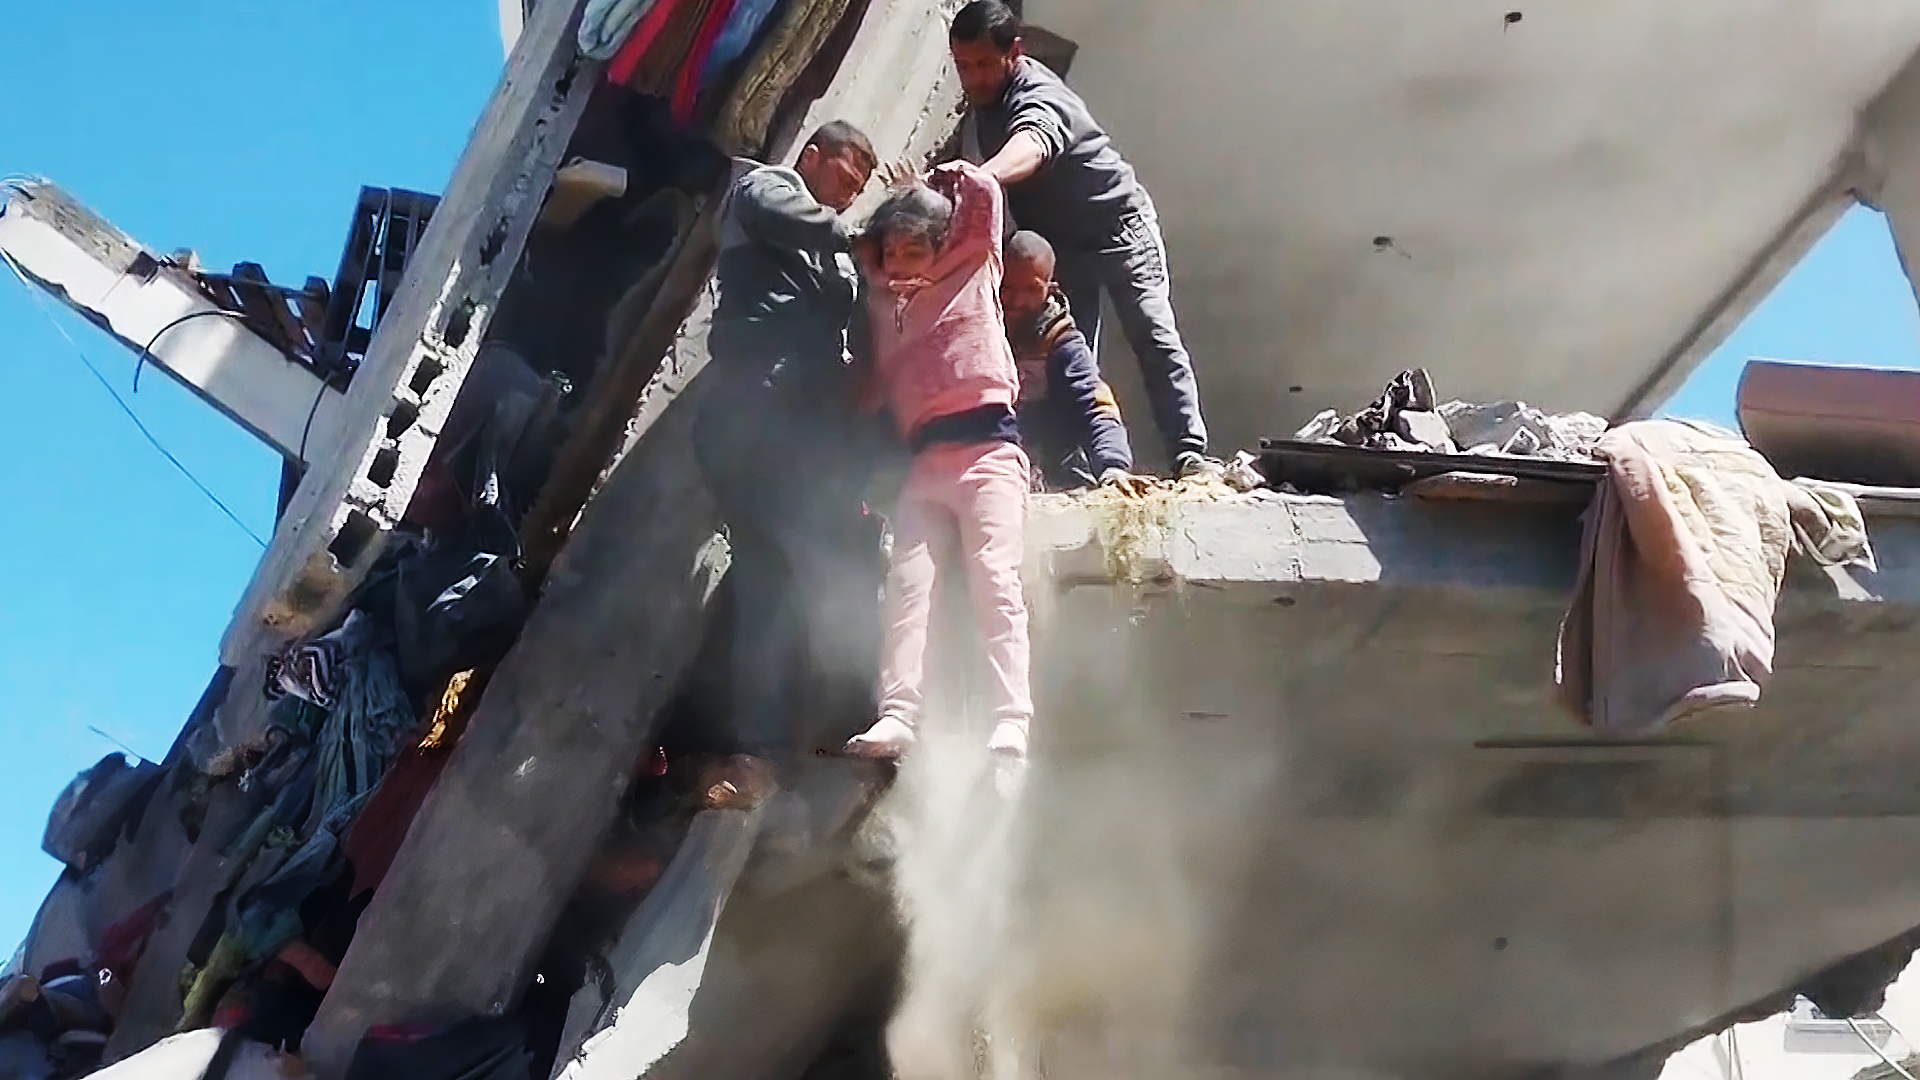 انتشال ضحايا من تحت أنقاض منزل قصفه الاحتلال بحي الشيخ رضوان | التقارير الإخبارية – البوكس نيوز